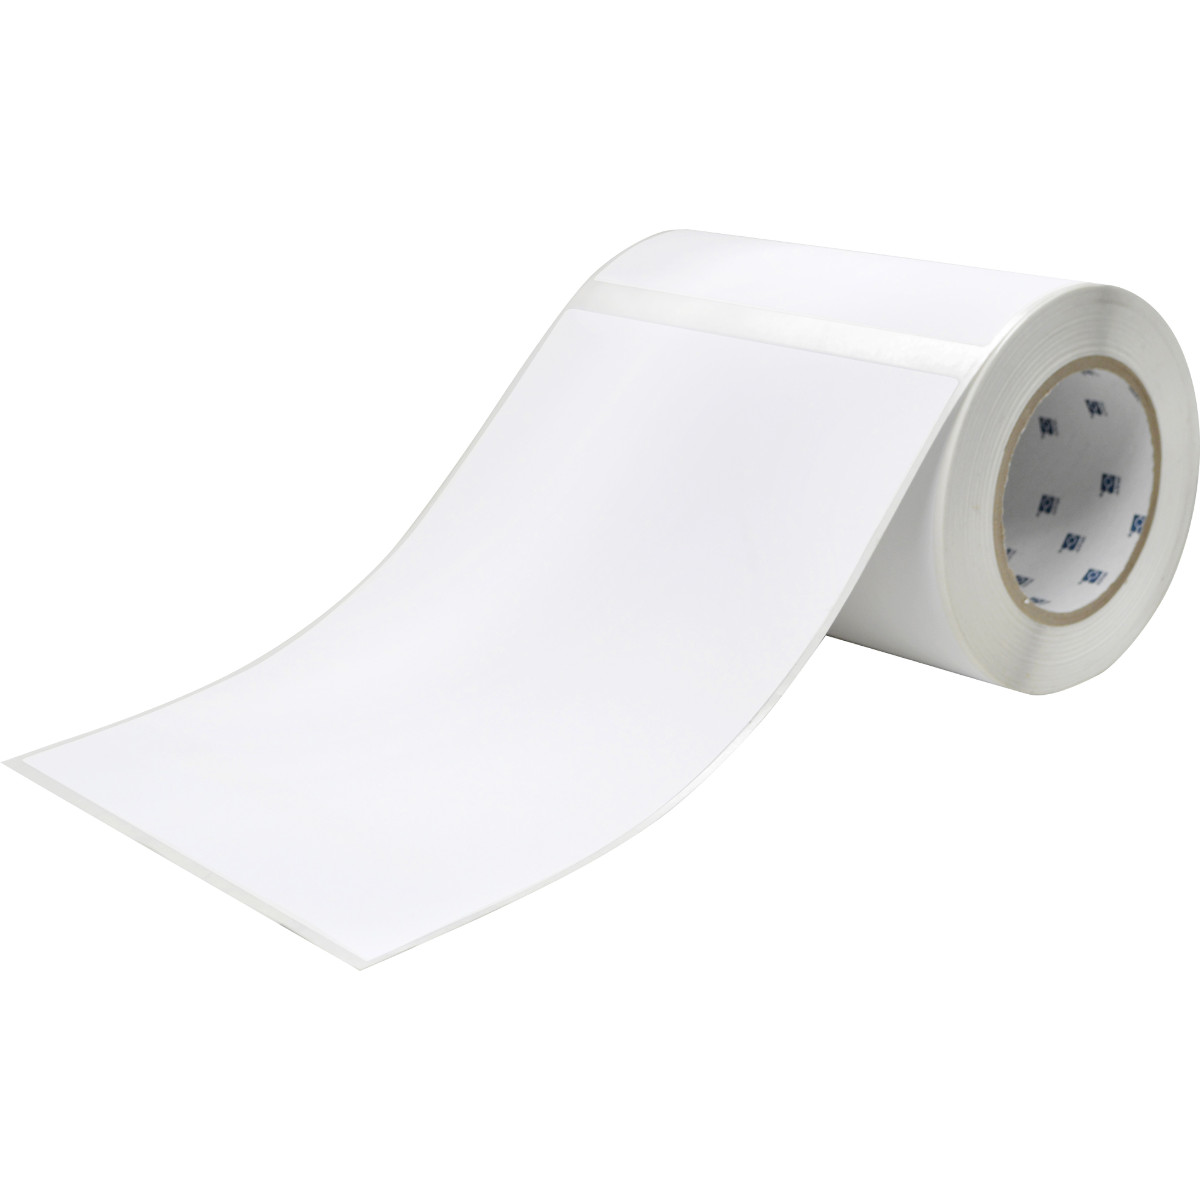 Etiquettes en polyester pour l’imprimante J5000